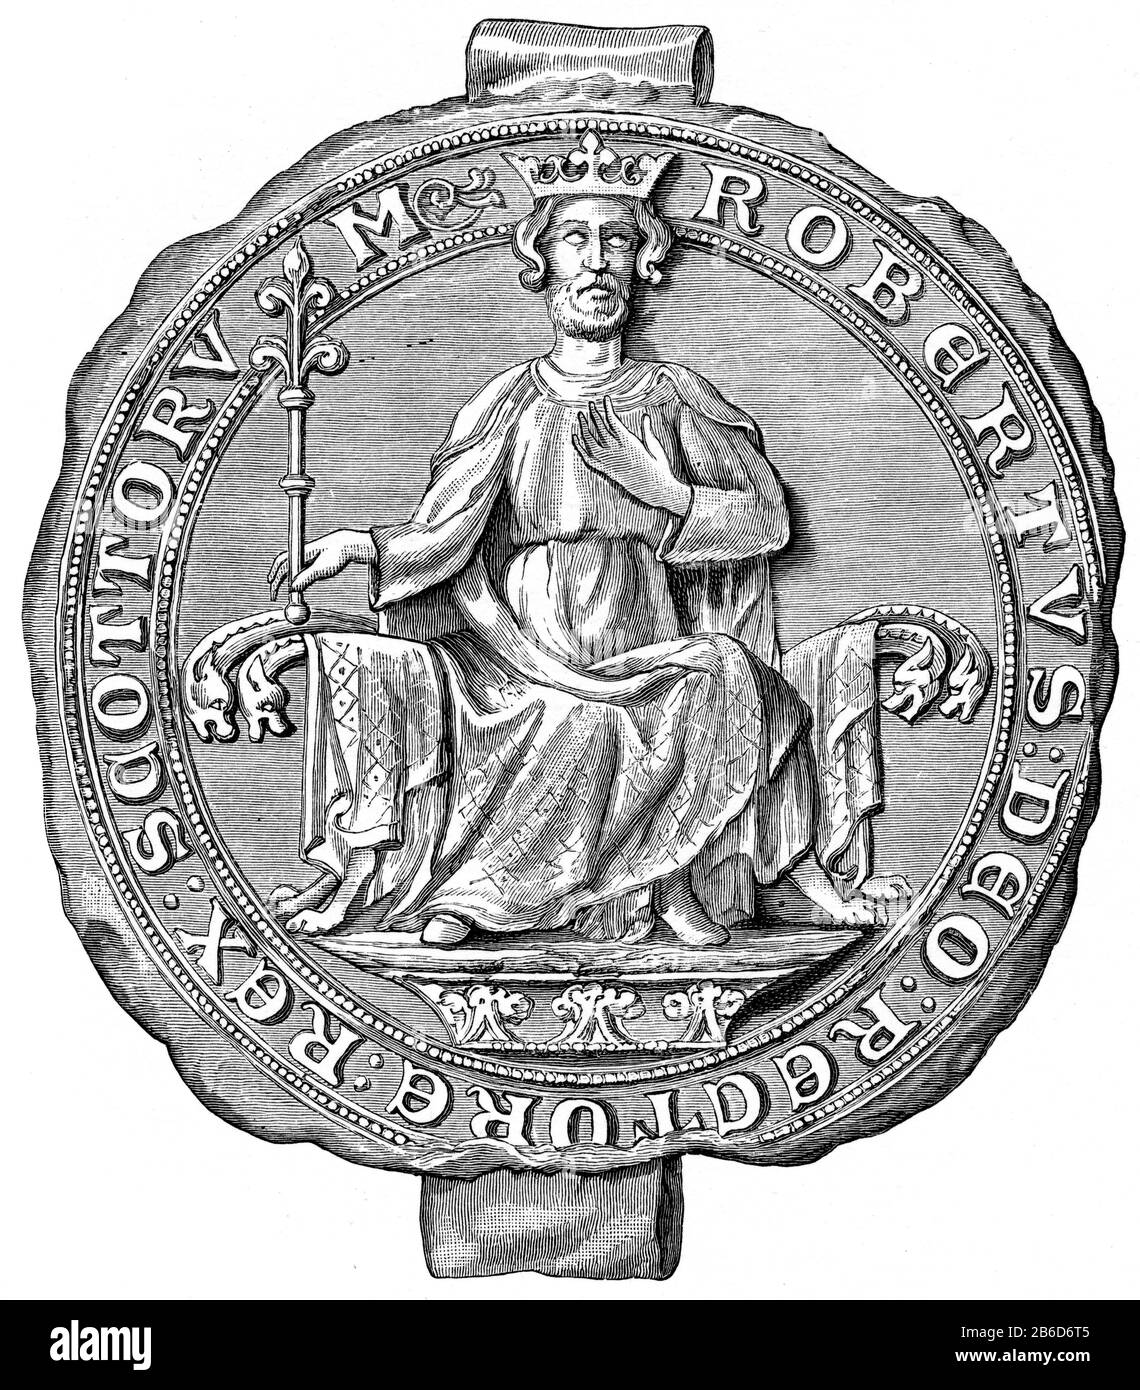 Siegel von Robert Bruce, König von Schotten, 14. Jahrhundert. König Robert I. (1274-1329), im Volksmund bekannt als Robert the Bruce, war König der Schotten von 1306 bis zu seinem Tod im Jahr 1329. Robert I führte Schottland während der Kriege der schottischen Unabhängigkeit. Stockfoto